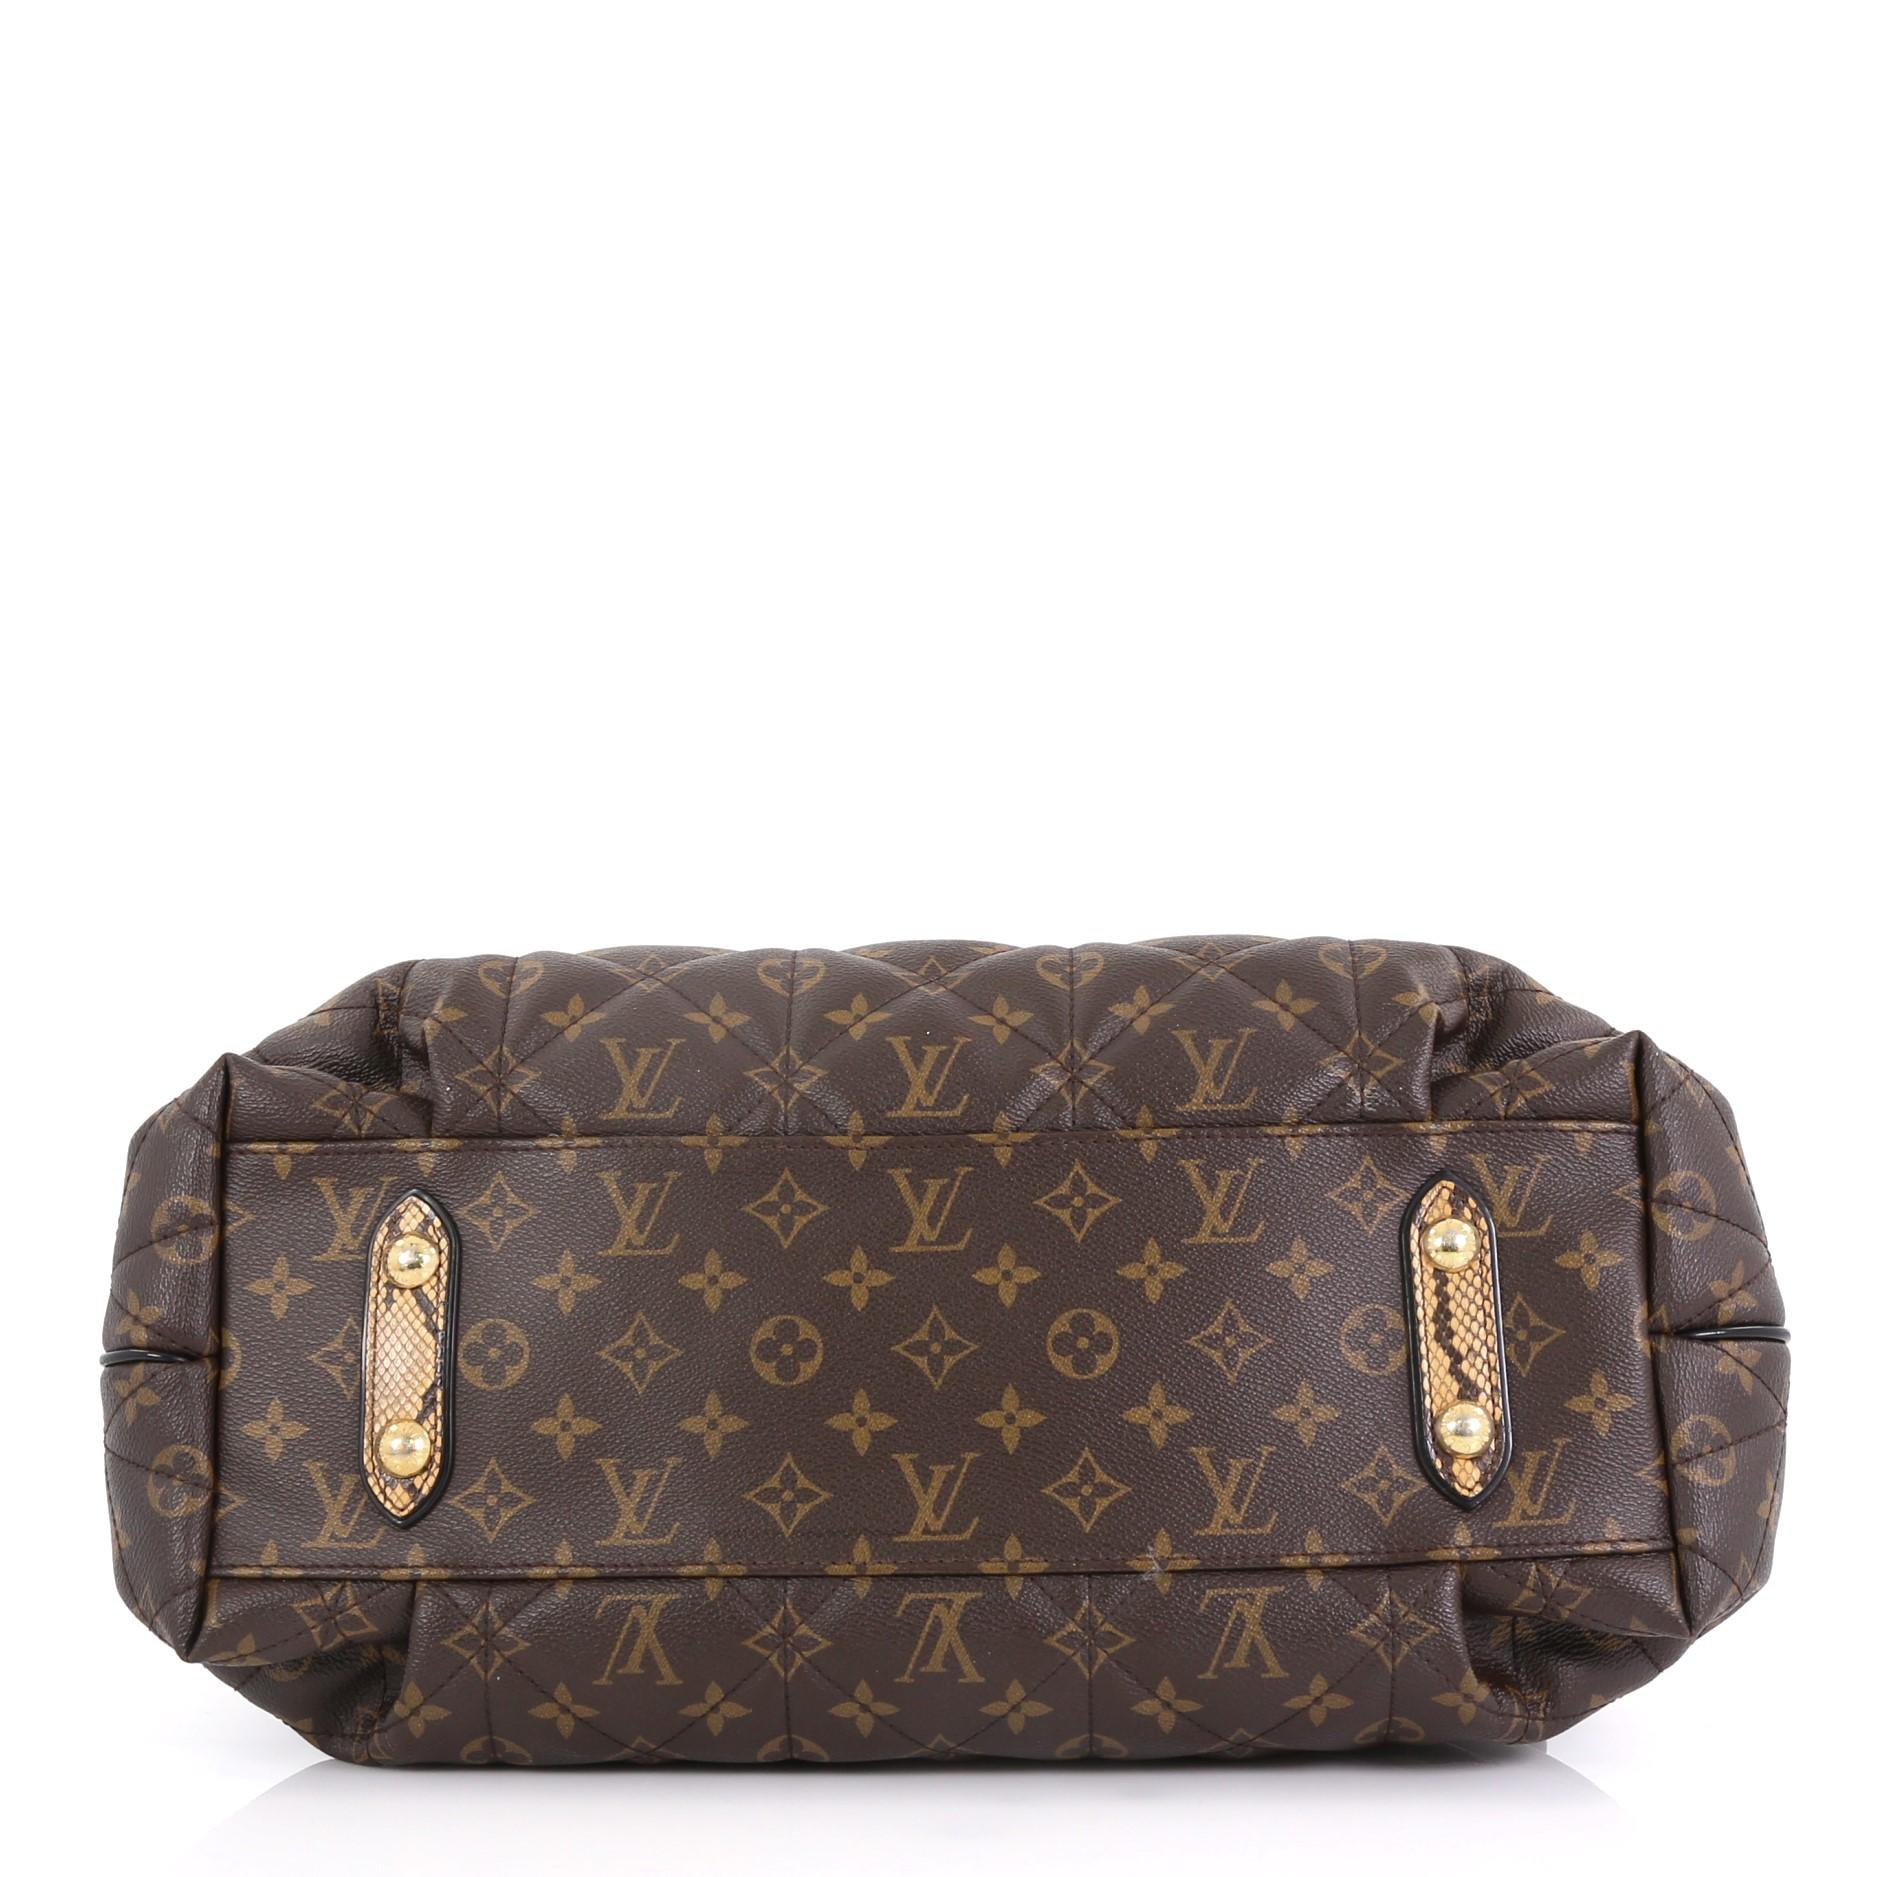 Black Louis Vuitton Limited Edition Exotique Handbag Monogram Etoile GM 